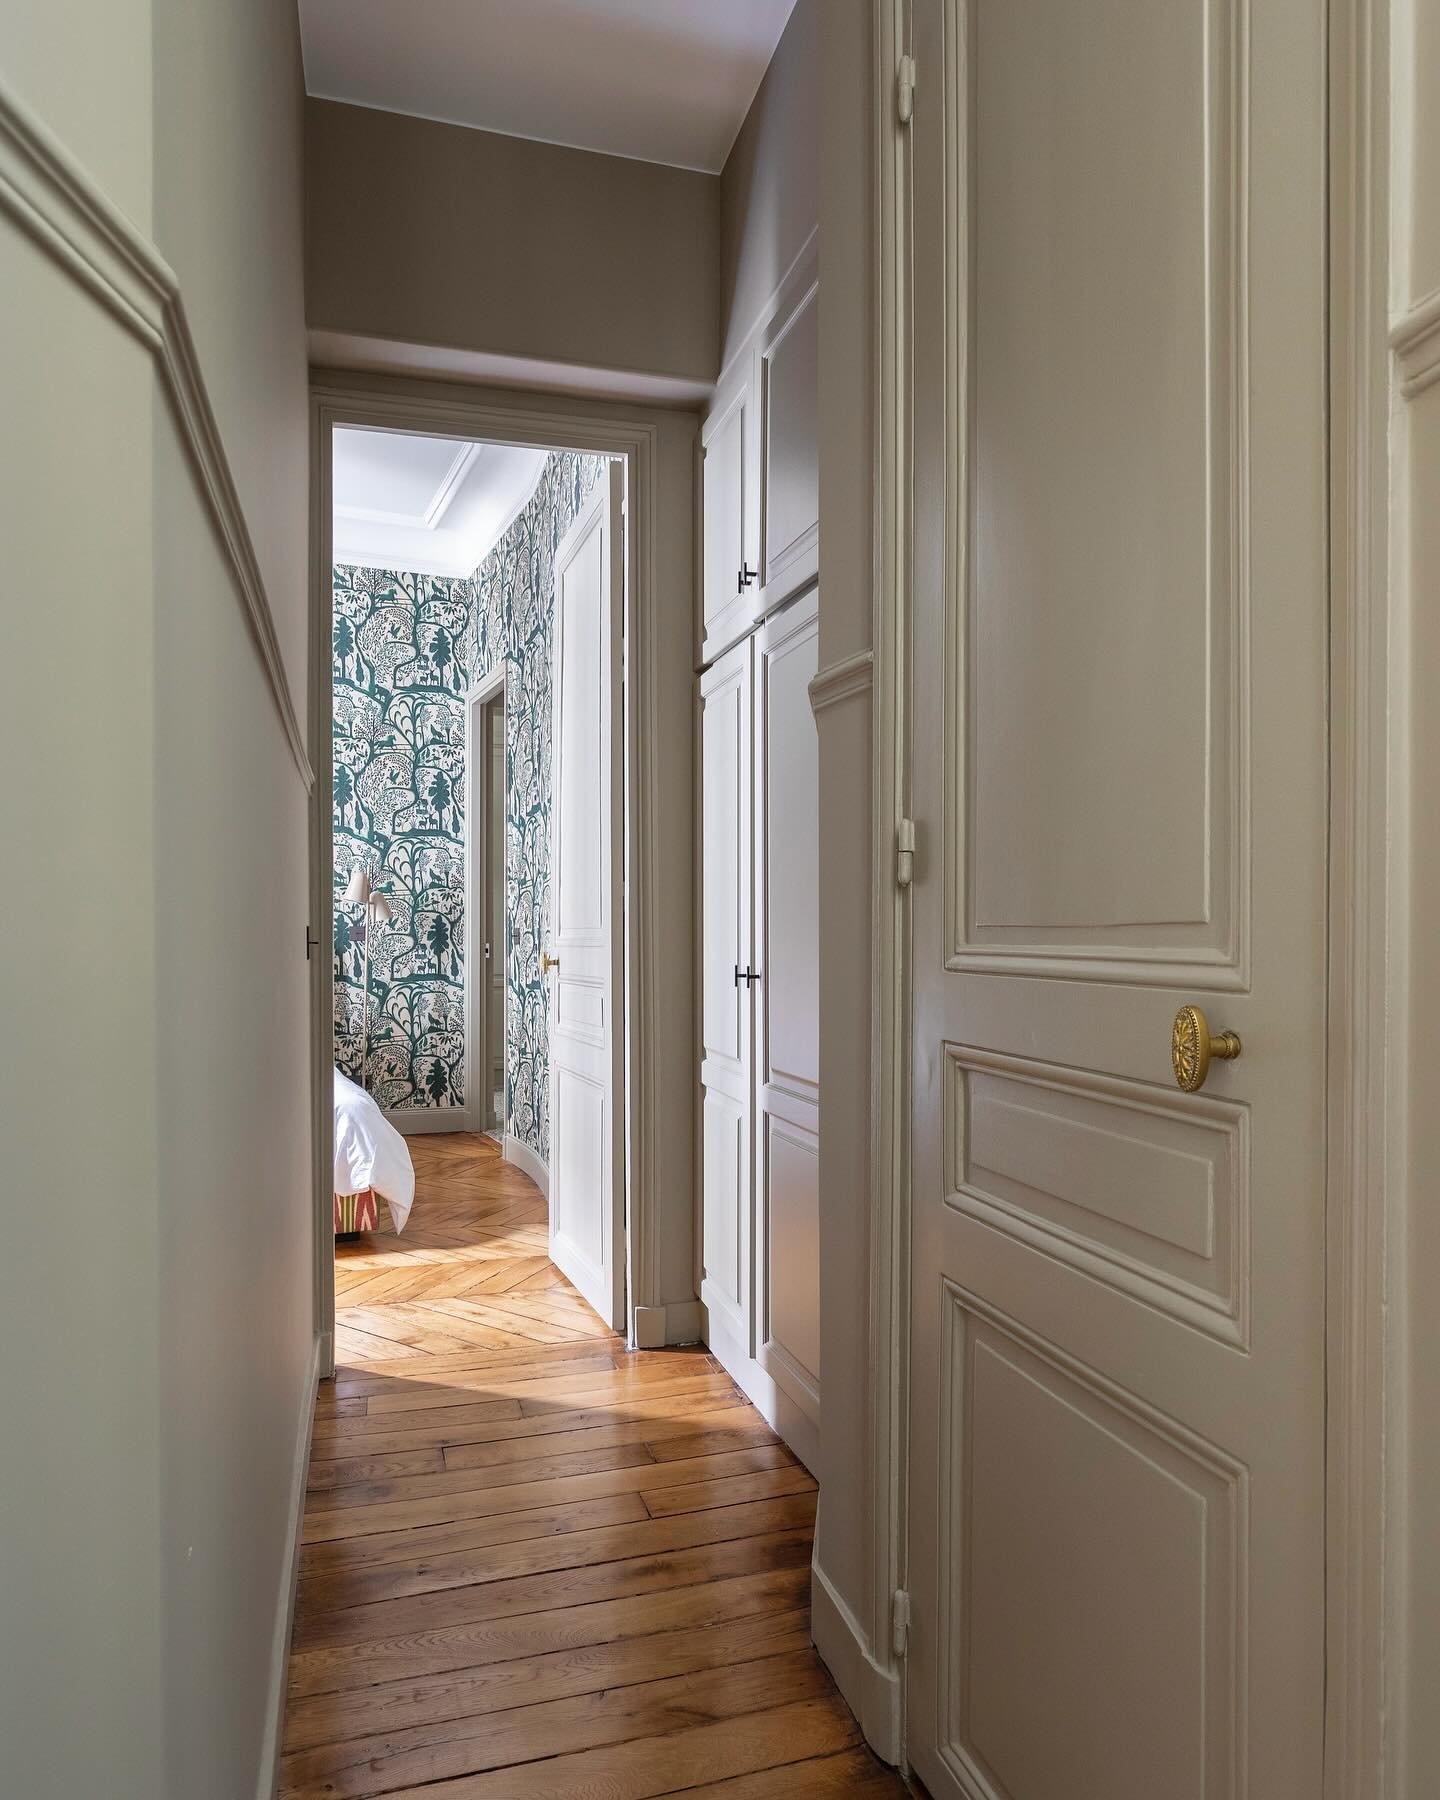 L&rsquo;espace couloir menant &agrave; la master bedroom de notre projet Marceau. Un bel haussmannien de caract&egrave;re situ&eacute; au pied des champs &eacute;lys&eacute;e.
&bull;
&bull;
📸 @olivierhallotphotographe 
👷🏻&zwj;♀️ @sarahbenhamou.int